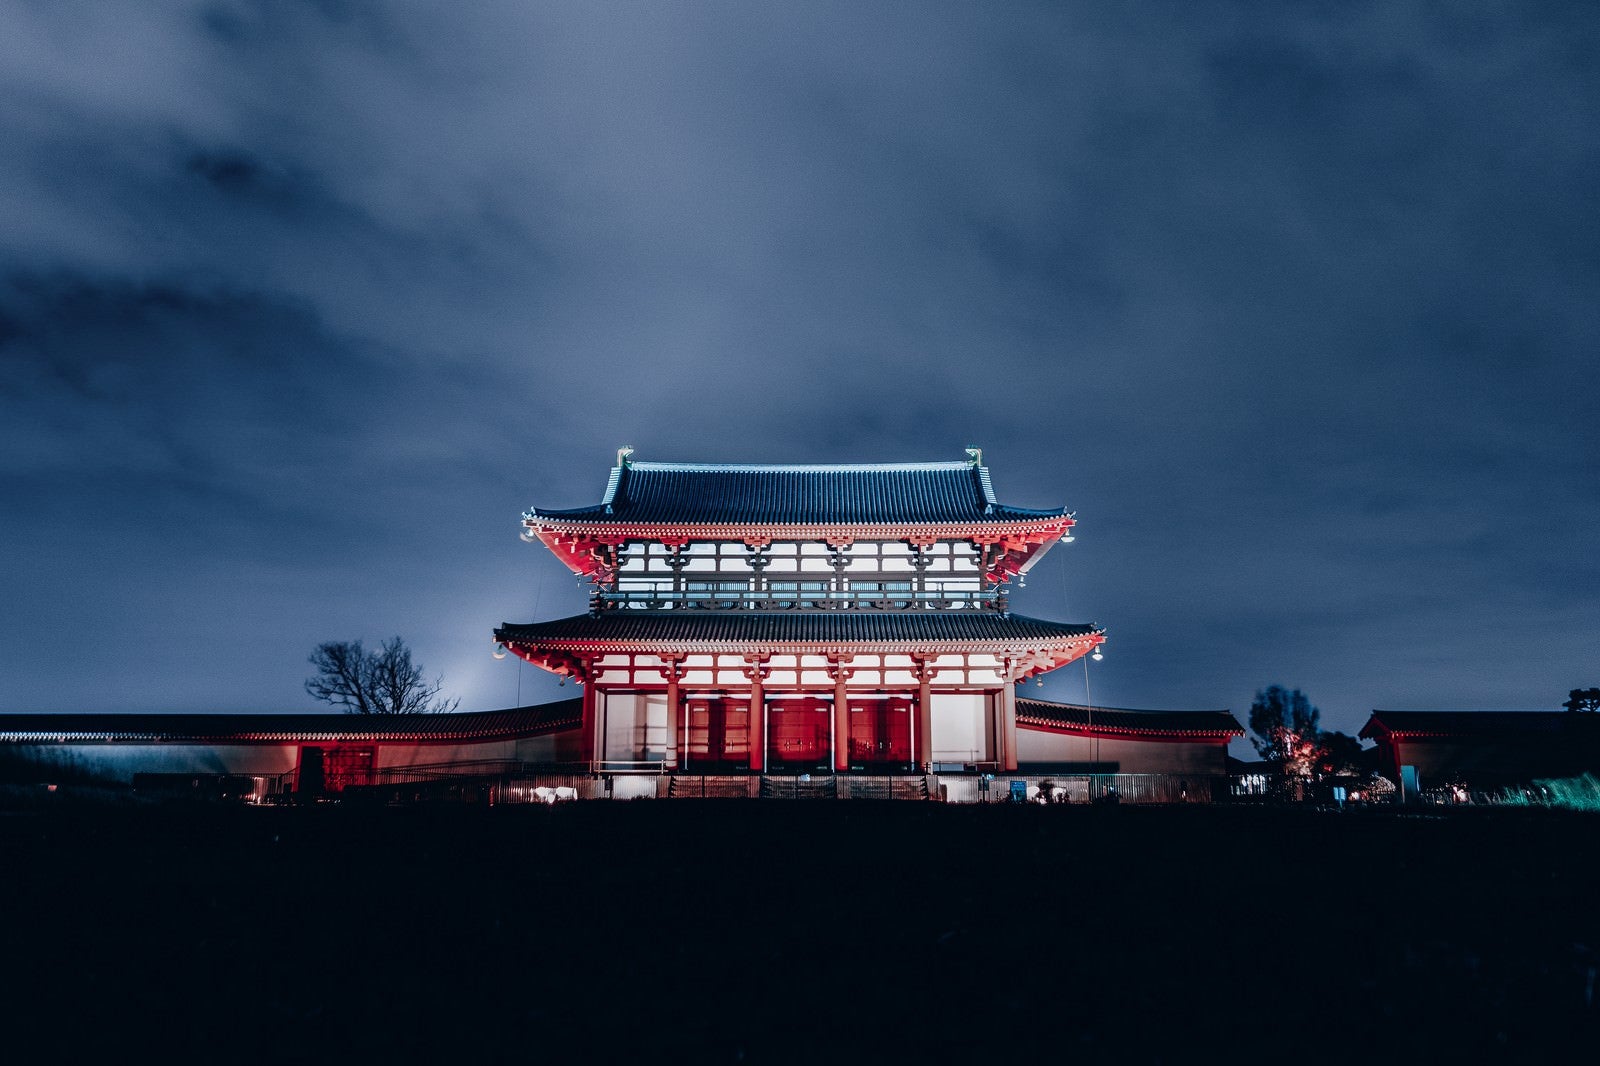 「夜にライトアップされた平城宮朱雀門」の写真